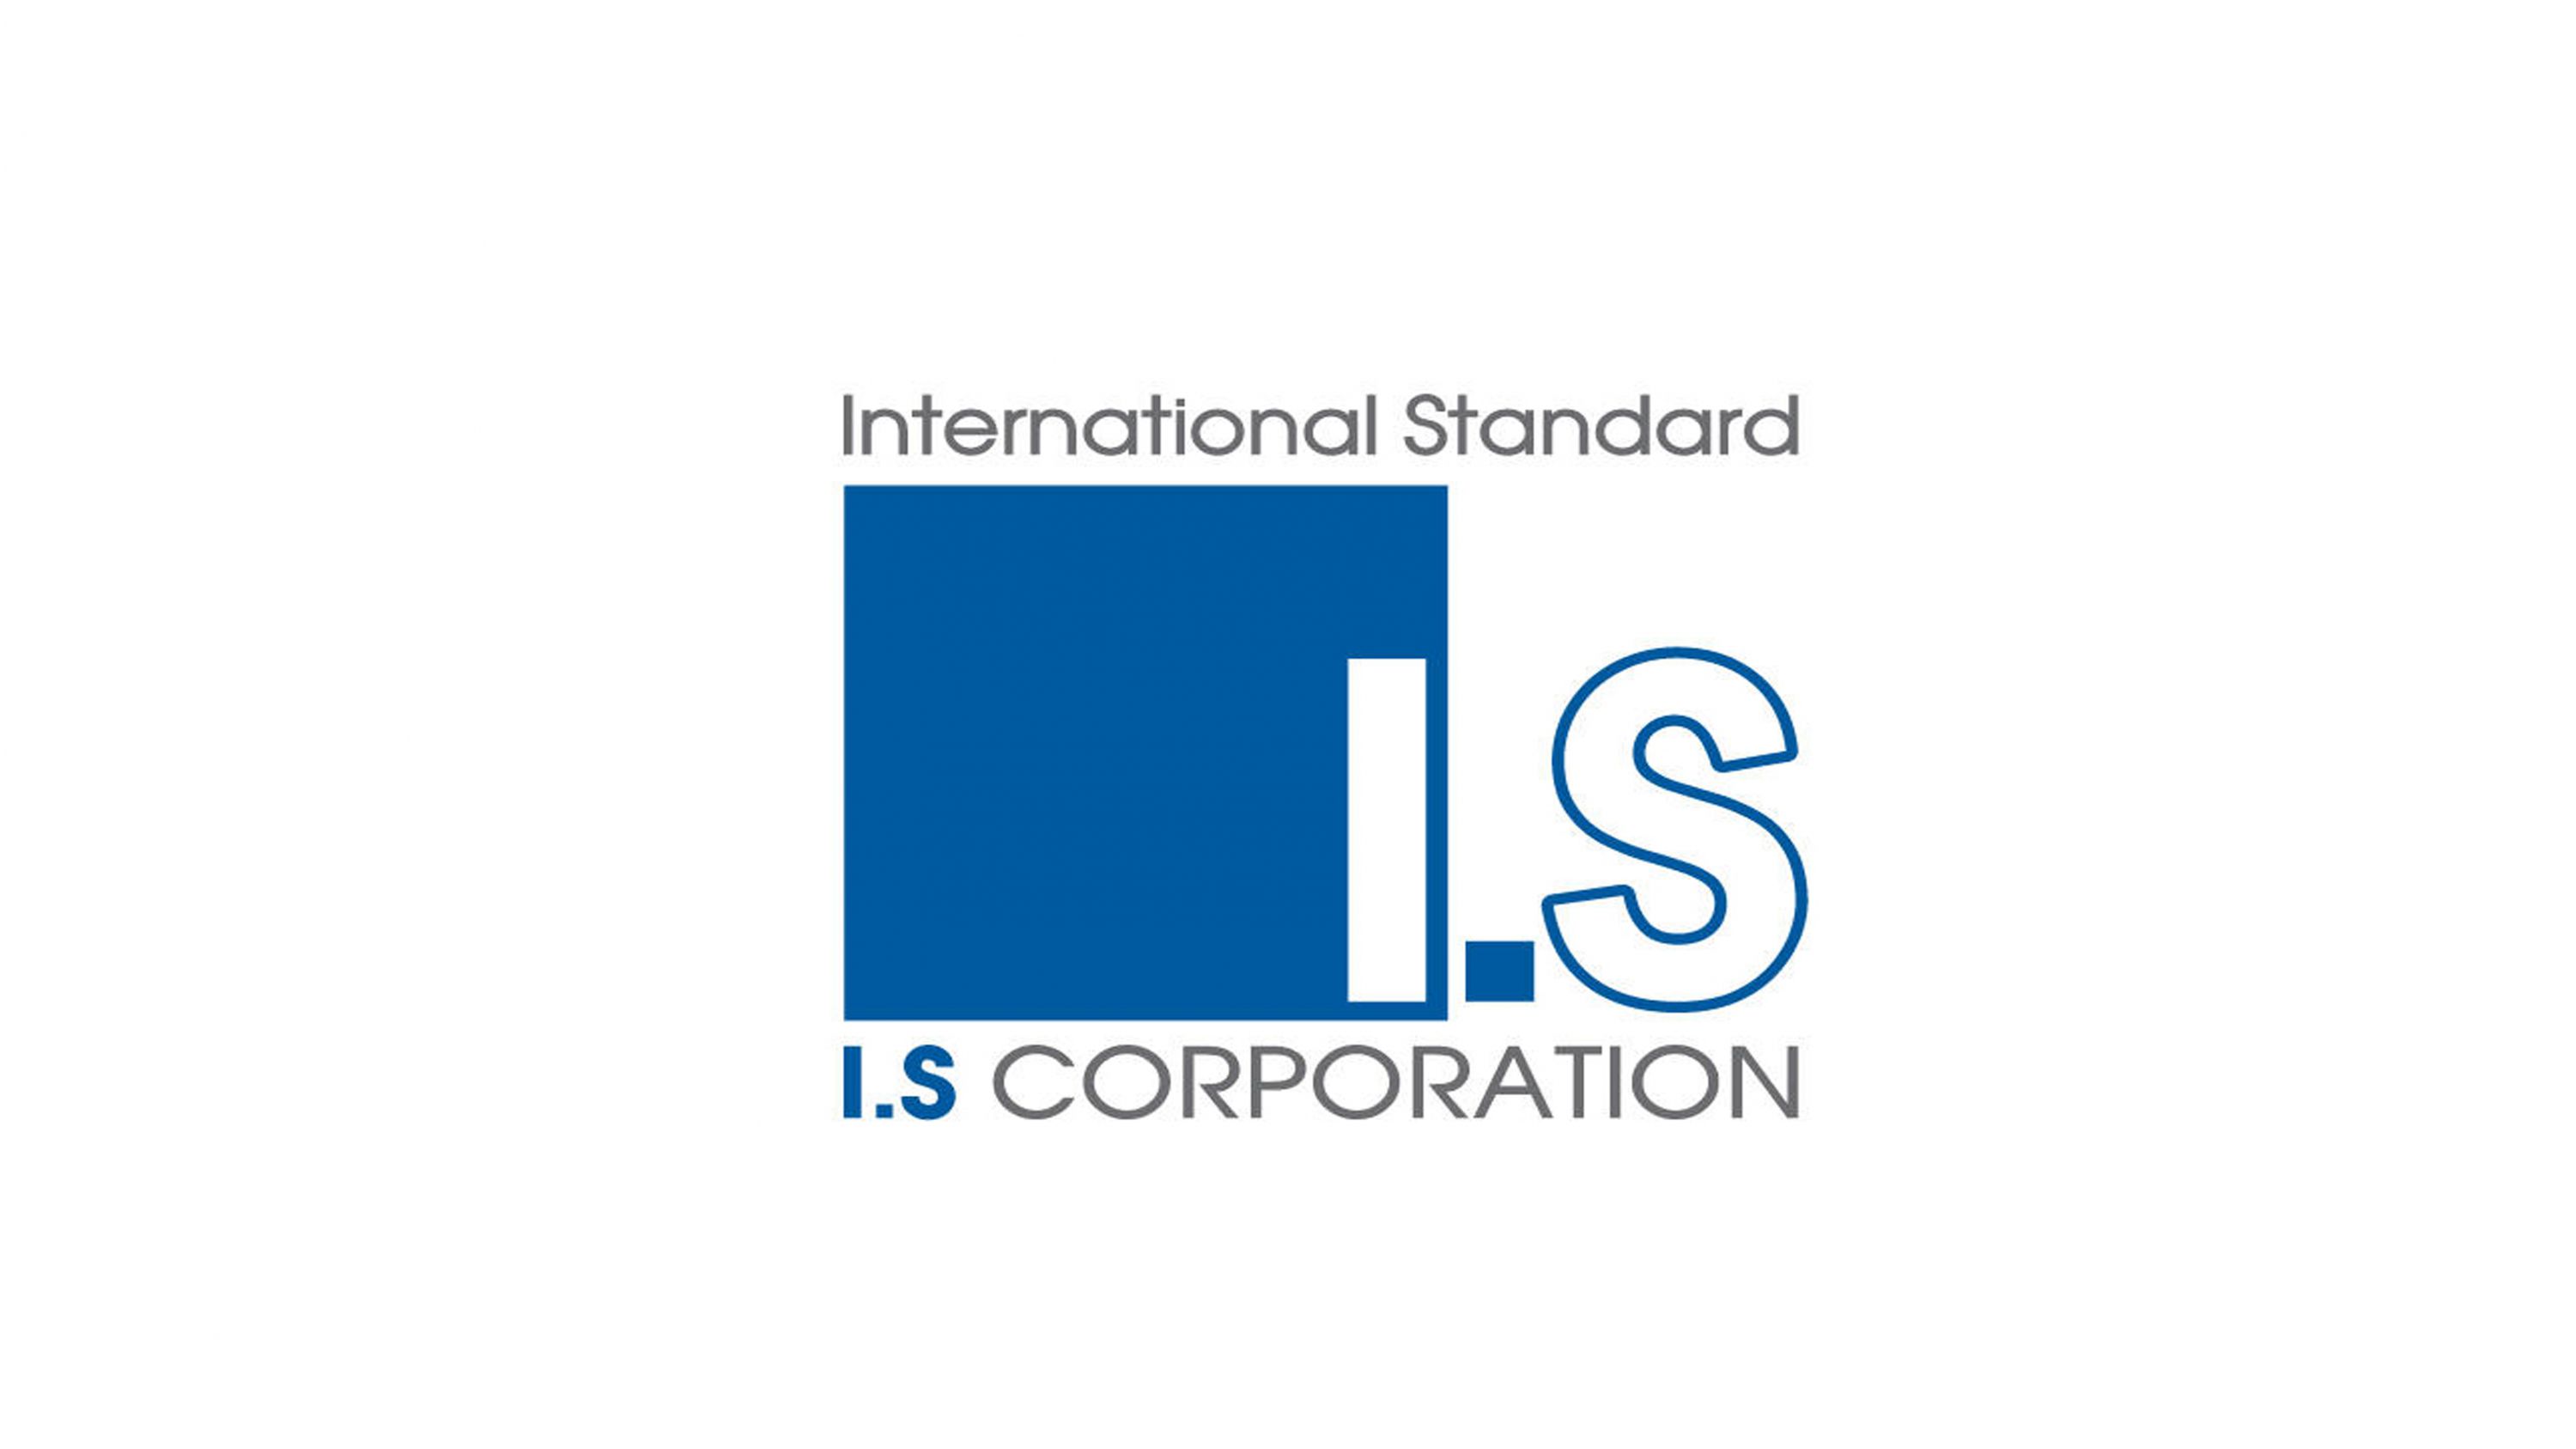 I.S company profile